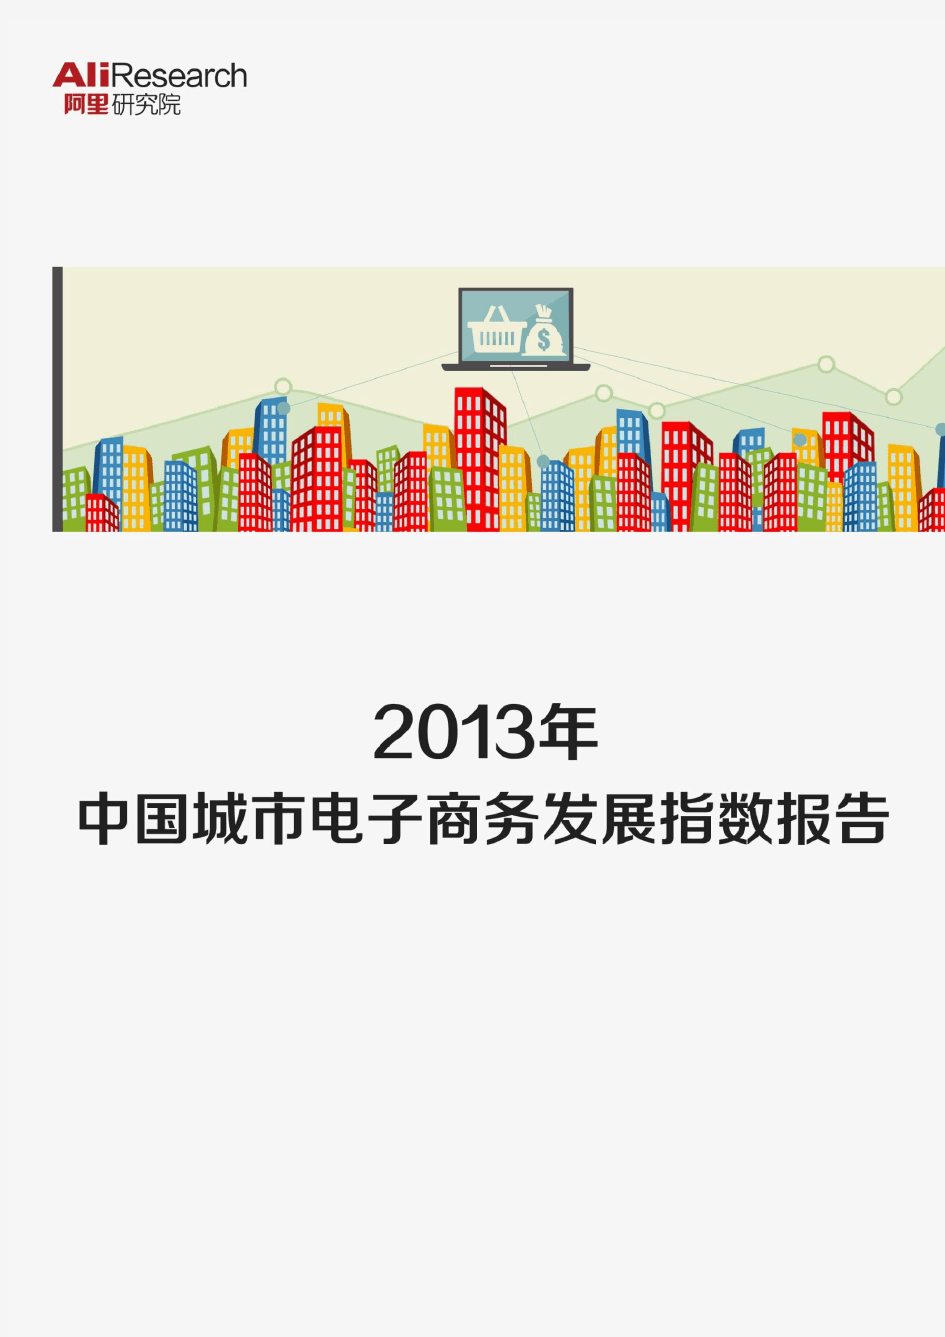 阿里研究院——《2013年中国城市电子商务发展指数报告》